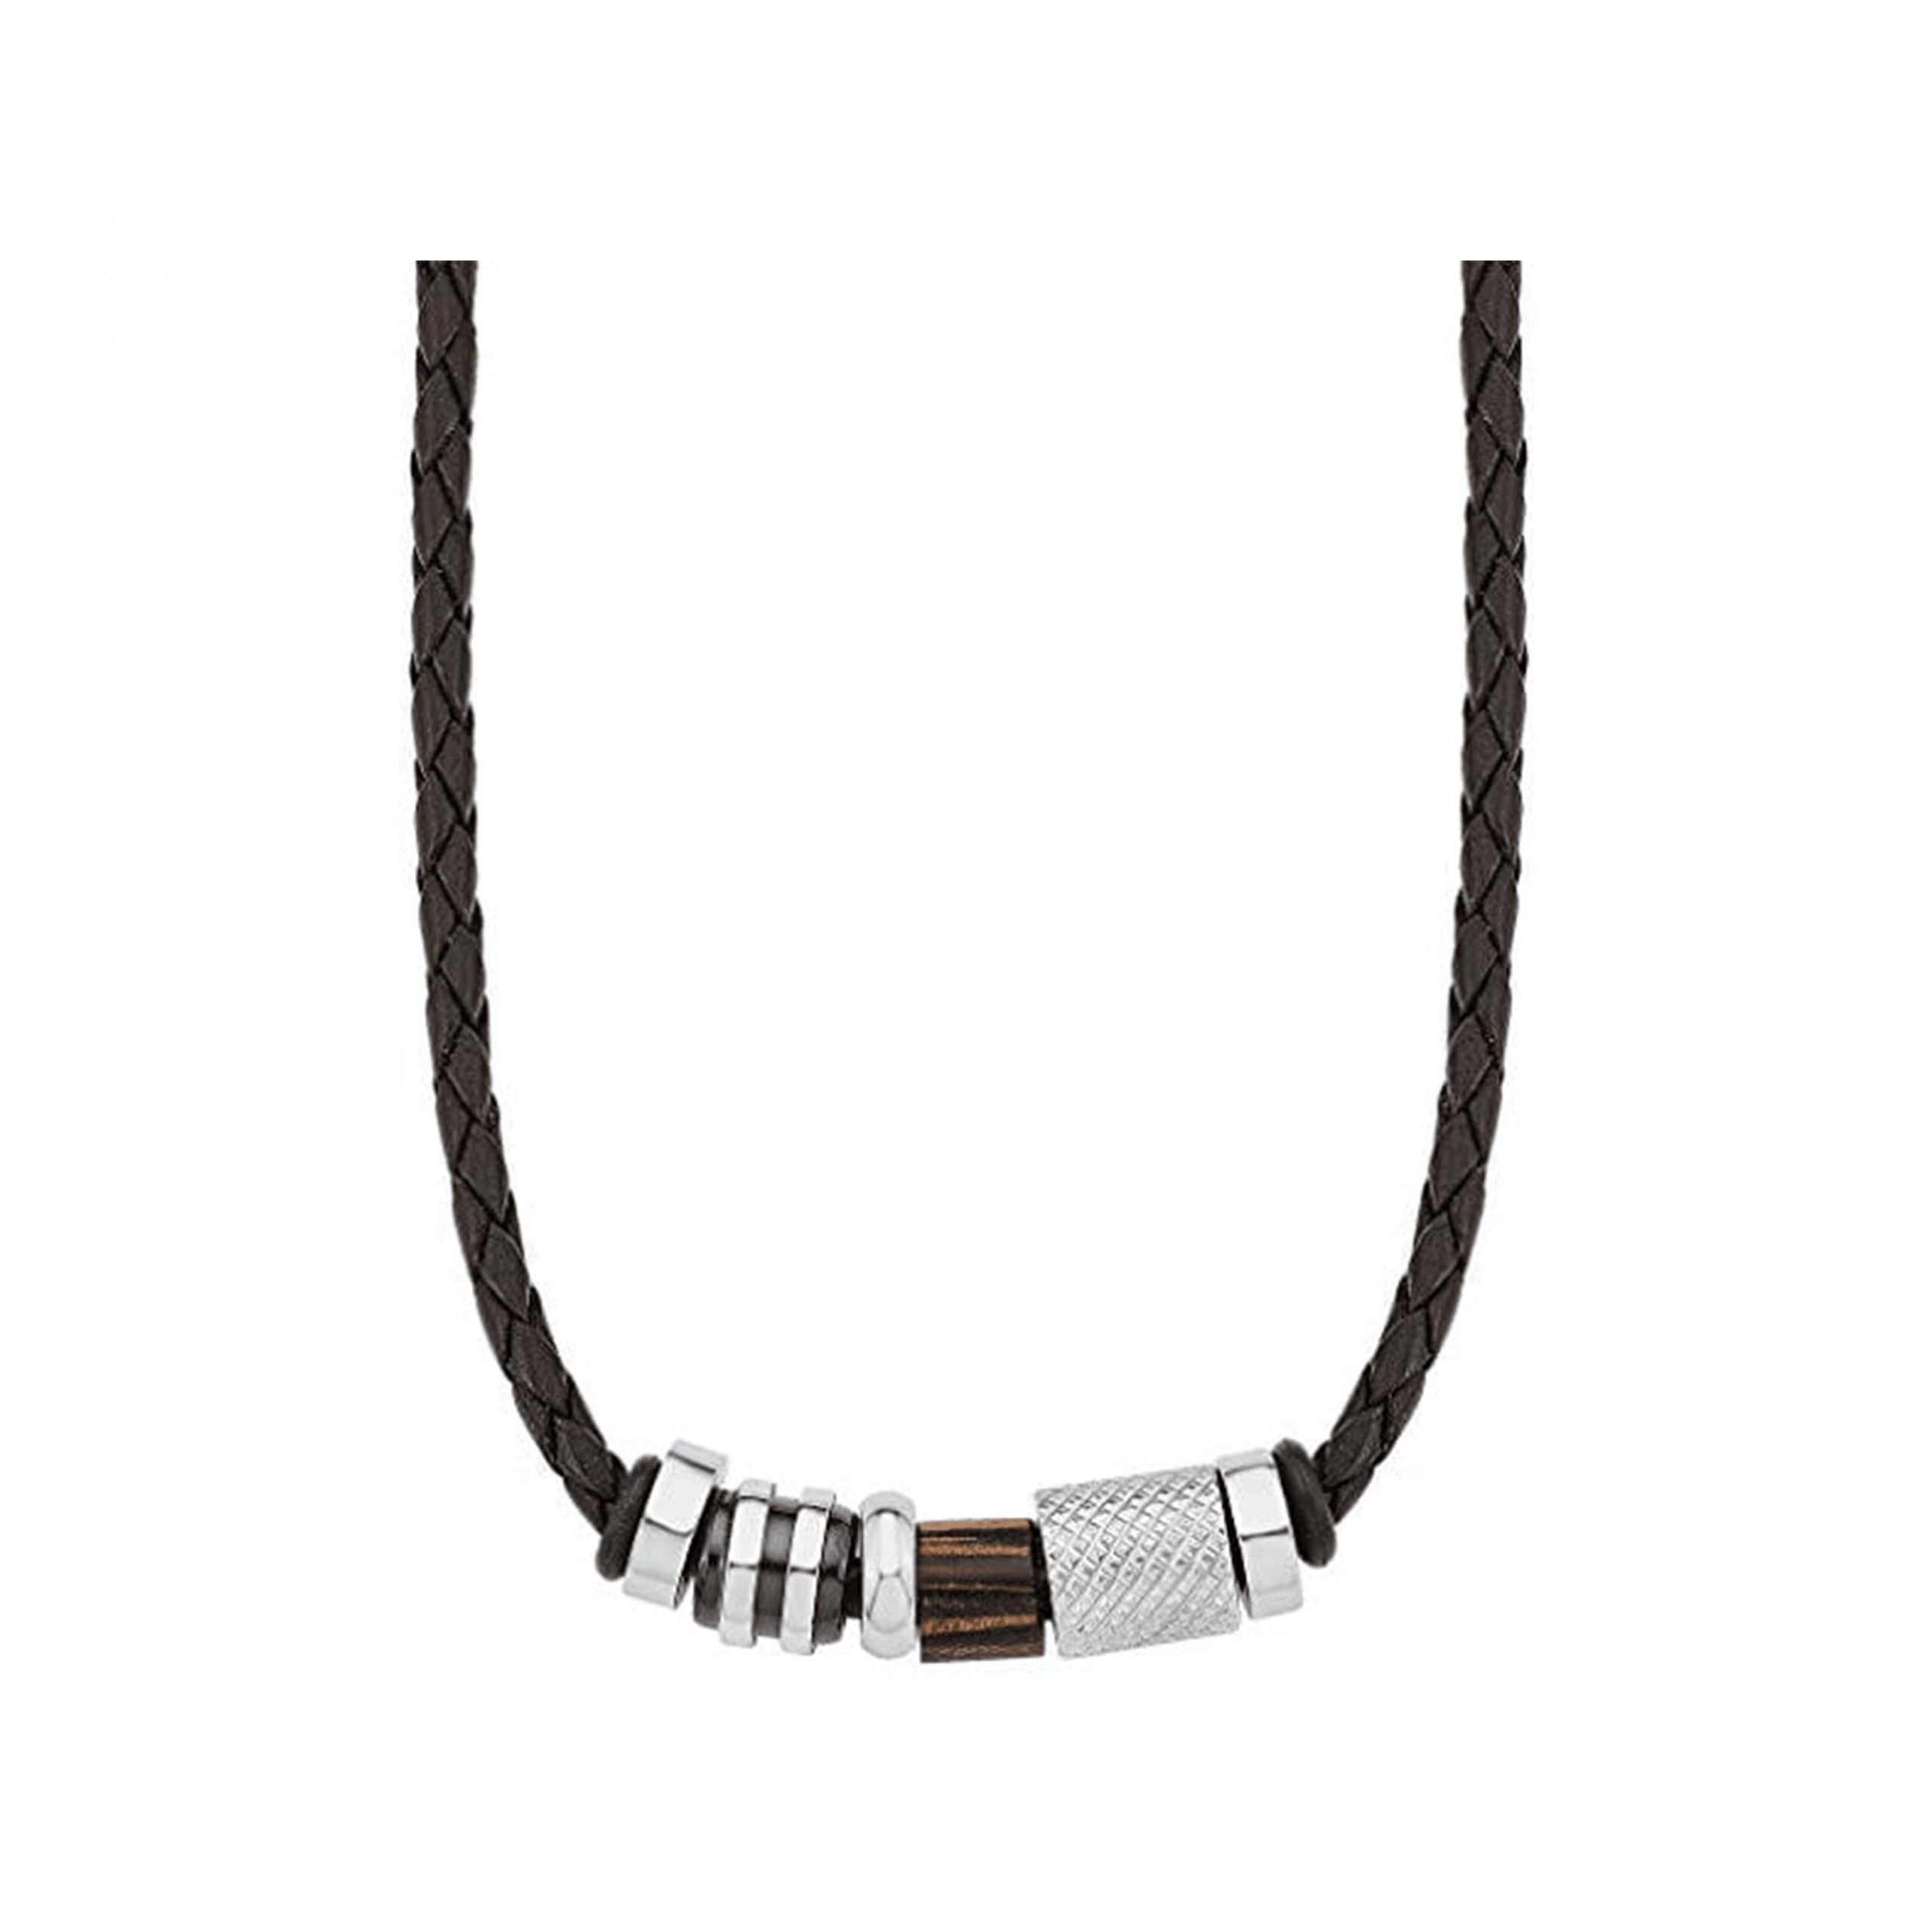 Amor Herren-Kette Lederband Lederkette mit Anhänger Beads Holz Edelstahl  braun 45 cm